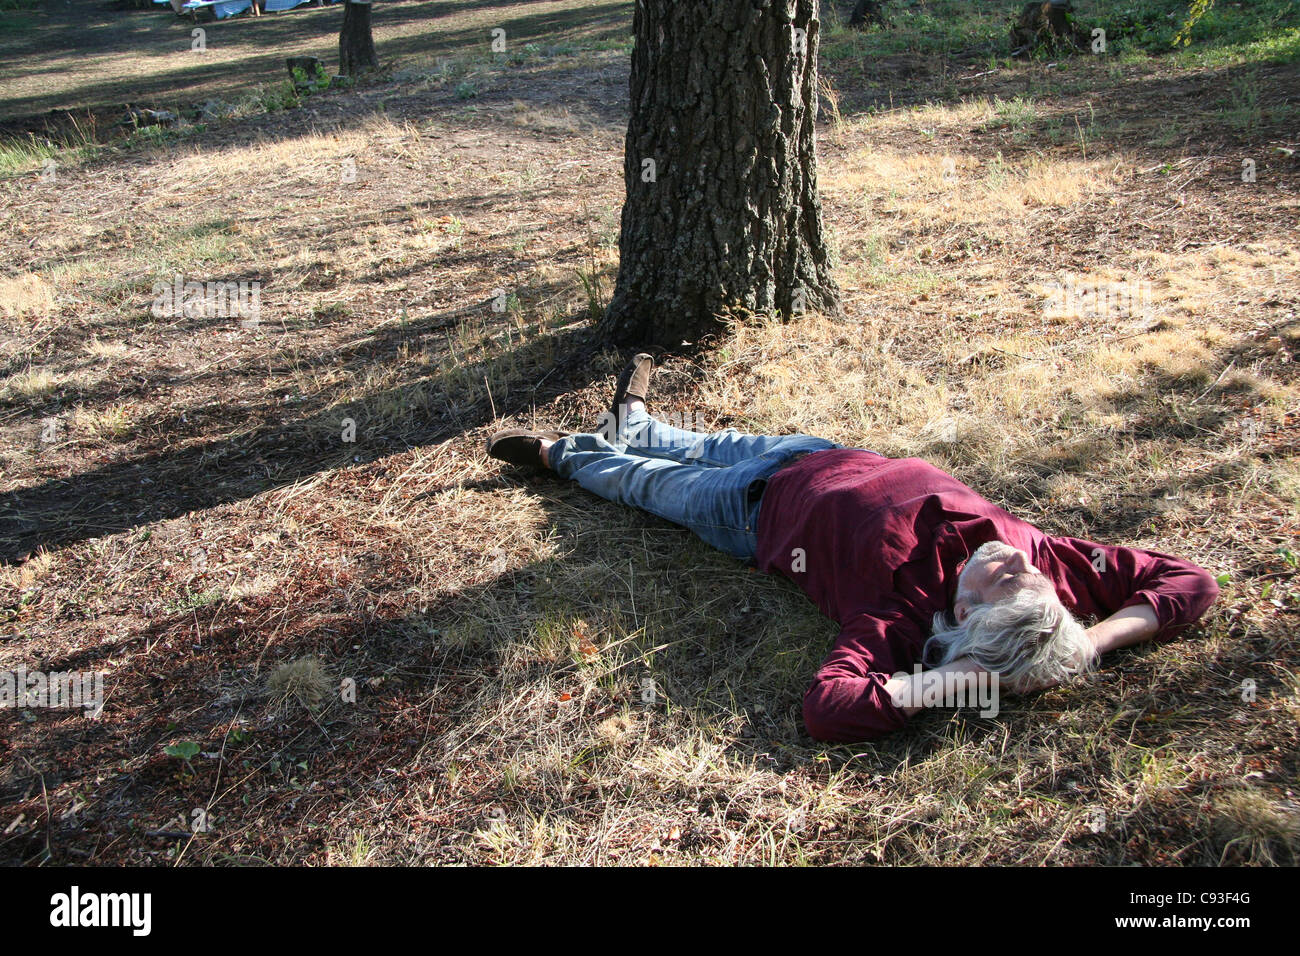 El hombre llevaba una camiseta roja, dormir una siesta en el suelo Foto de stock